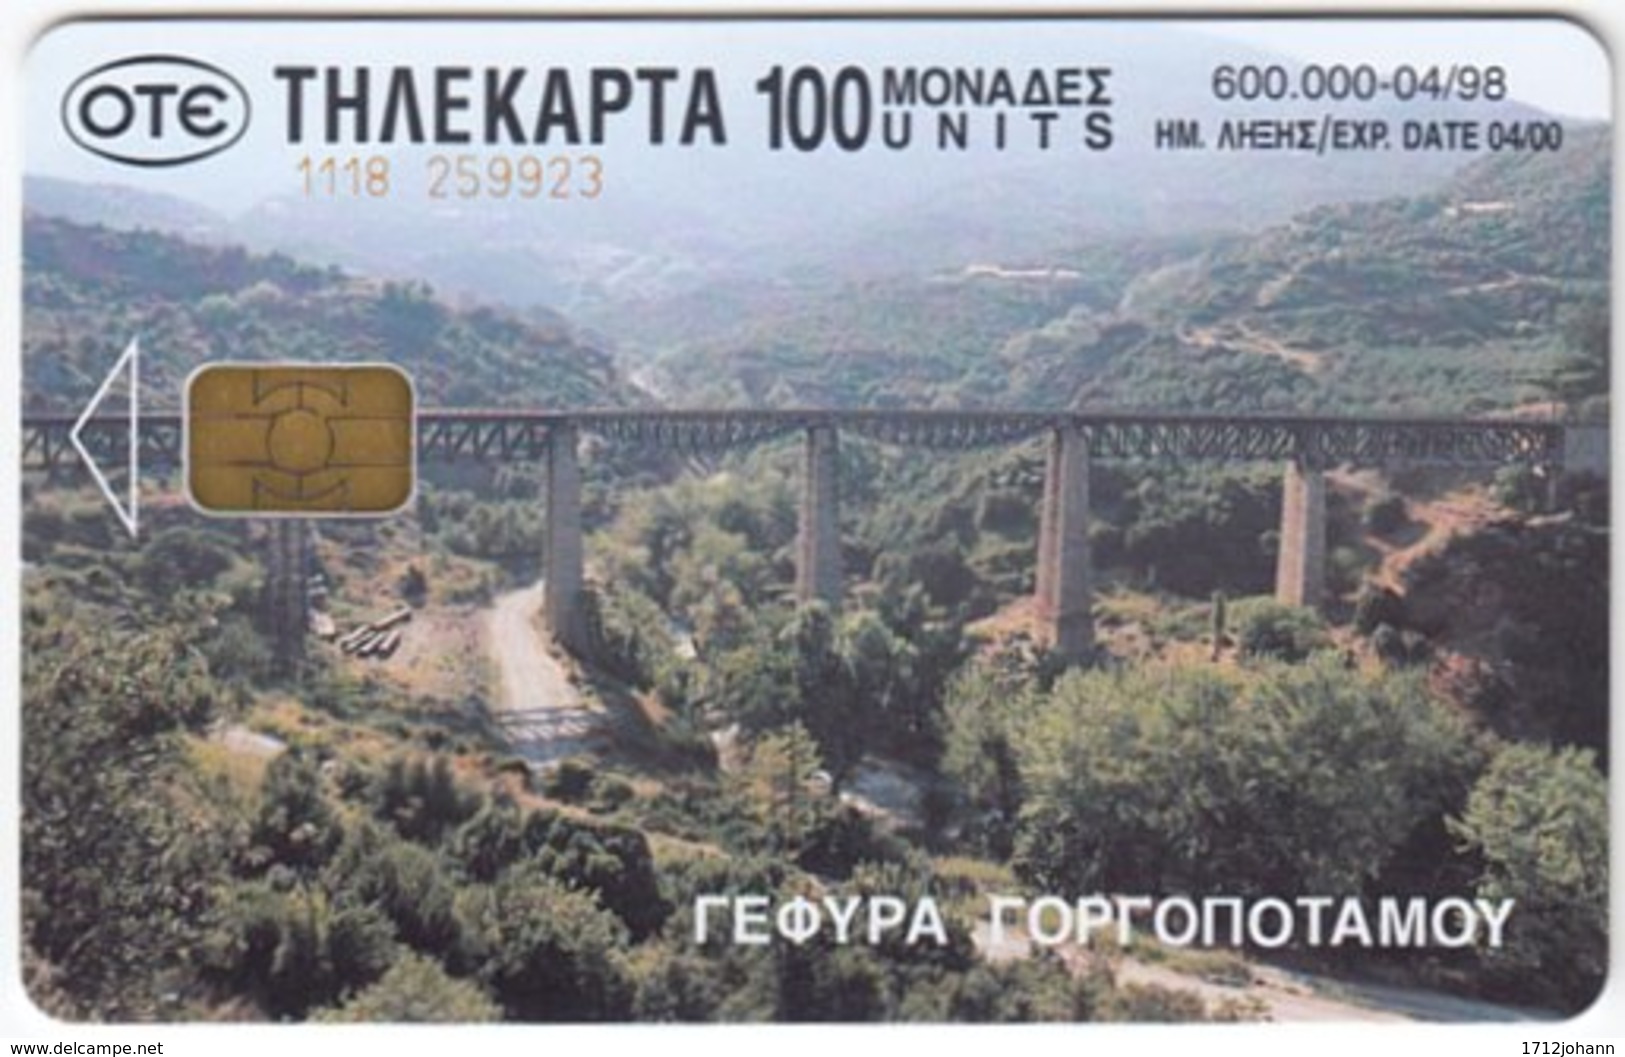 GREECE E-405 Chip OTE - View, Bridge / Landscape, Creek - Used - Griechenland